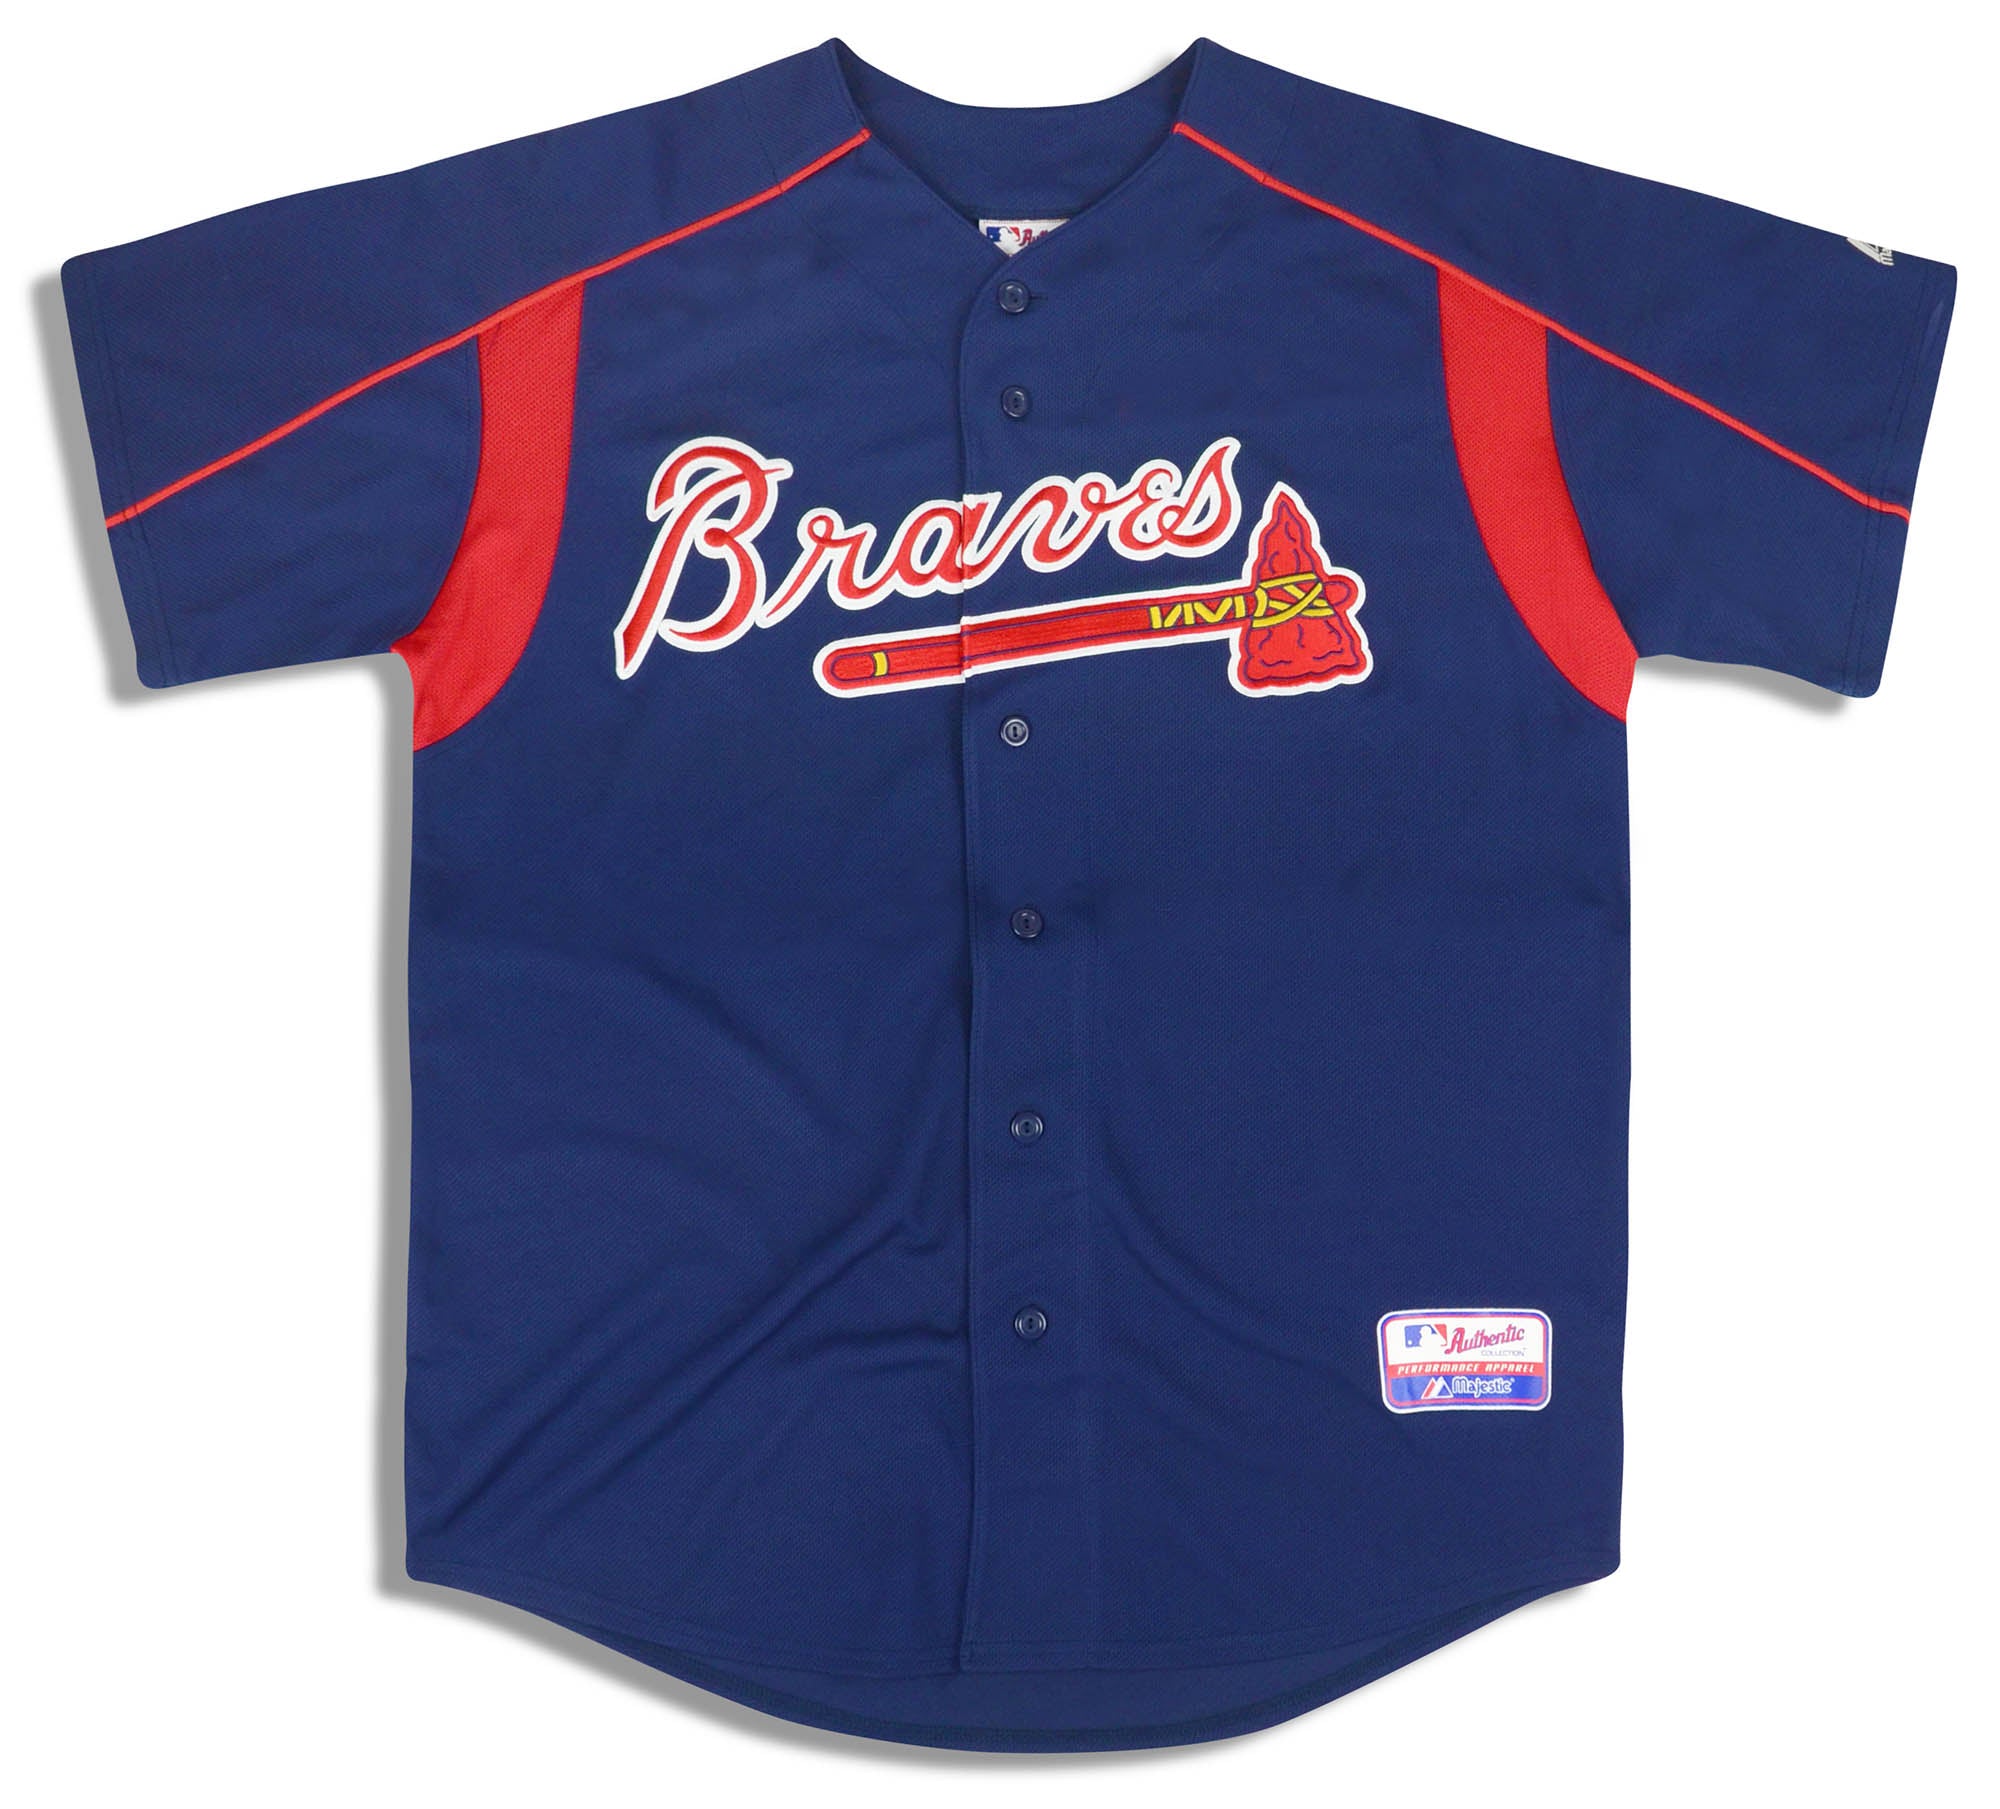 Atlanta Braves Baseball Jerseys, Braves Jerseys, Authentic Braves